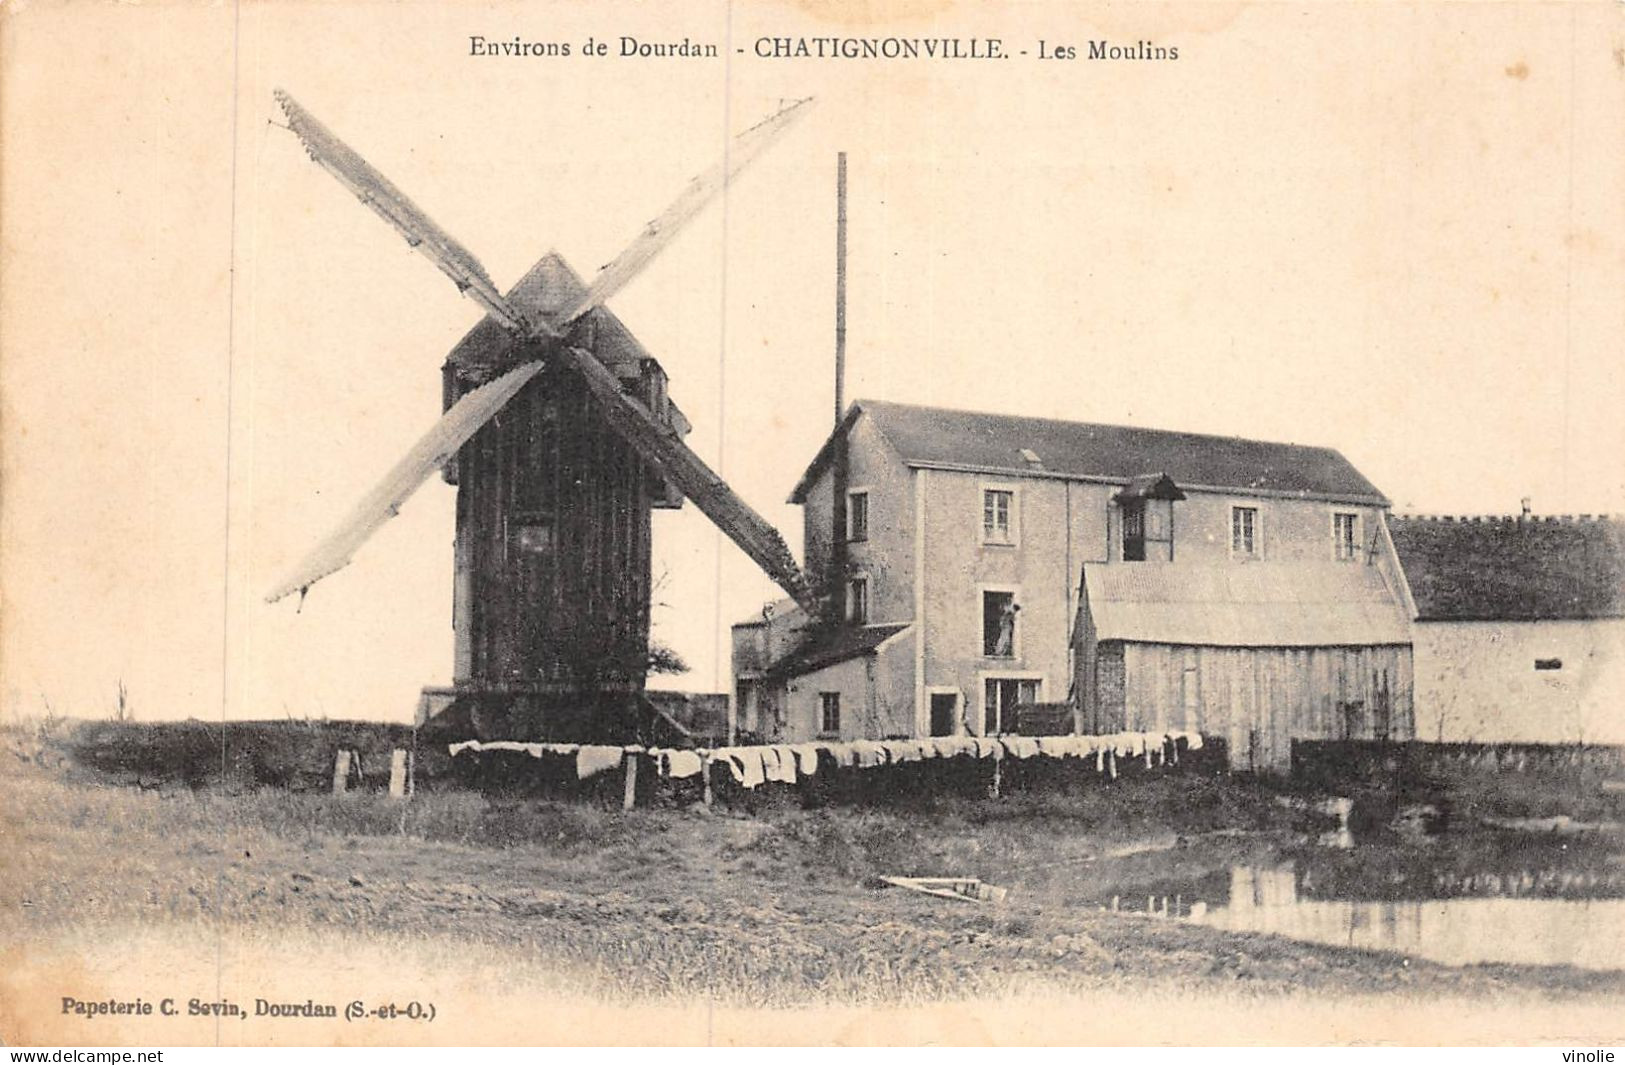 P-24-Mi-Is-1851 : CHATIGNONVILLE. LES MOULINS A EAU ET A VENT. ENVIRONS DE DOURDAN ESSONNE - Windmühlen